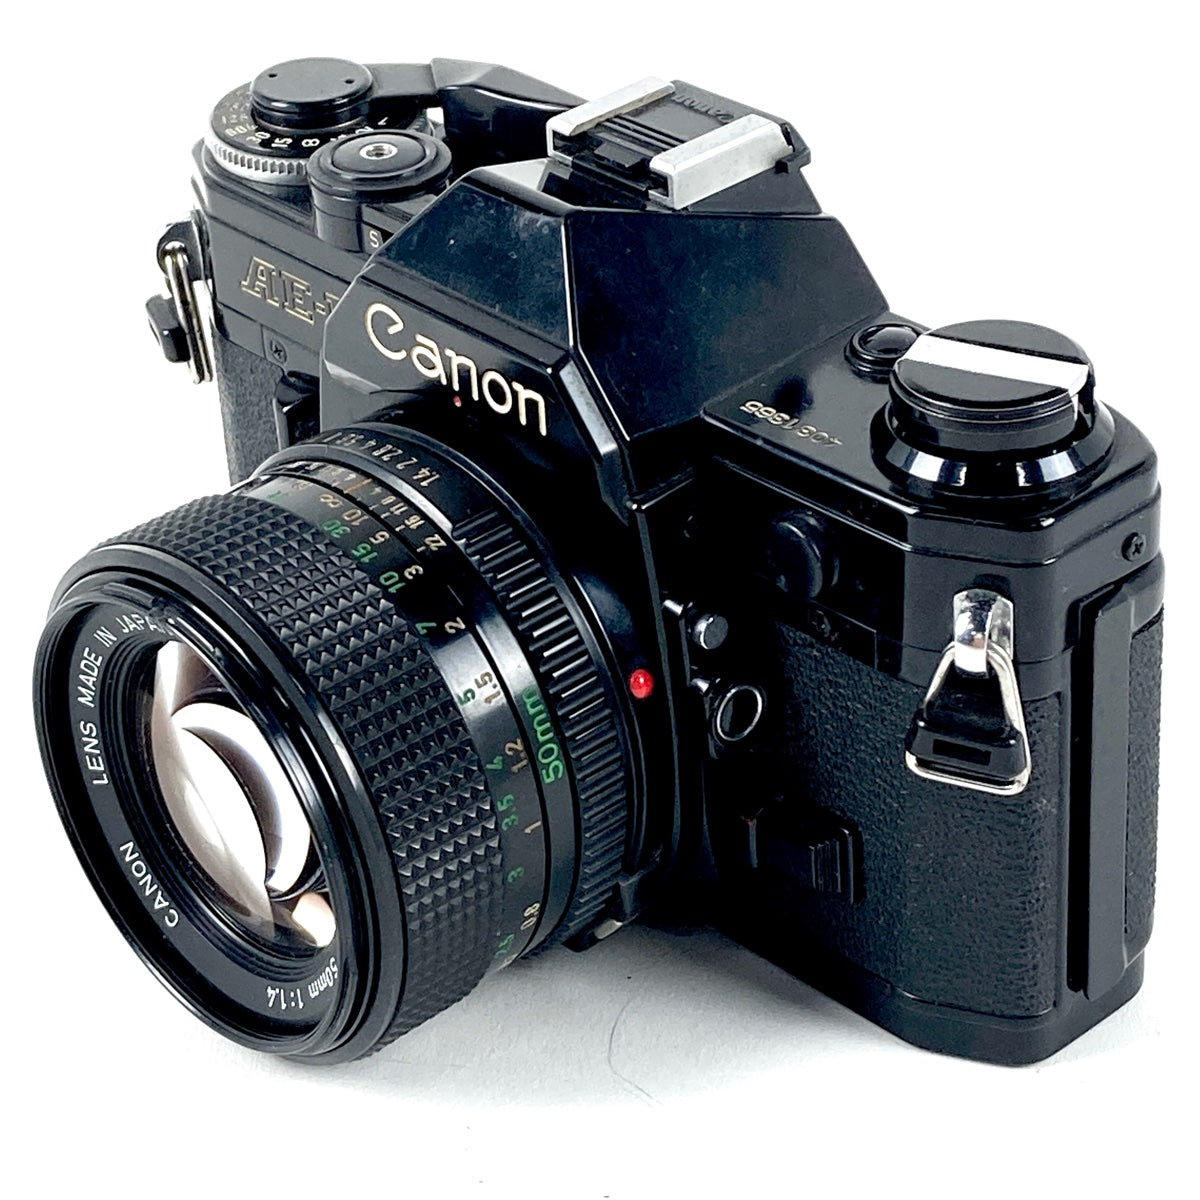 Canon AE-1 PROGRAM NEW 50mmF1.4 レンズセット - フィルムカメラ